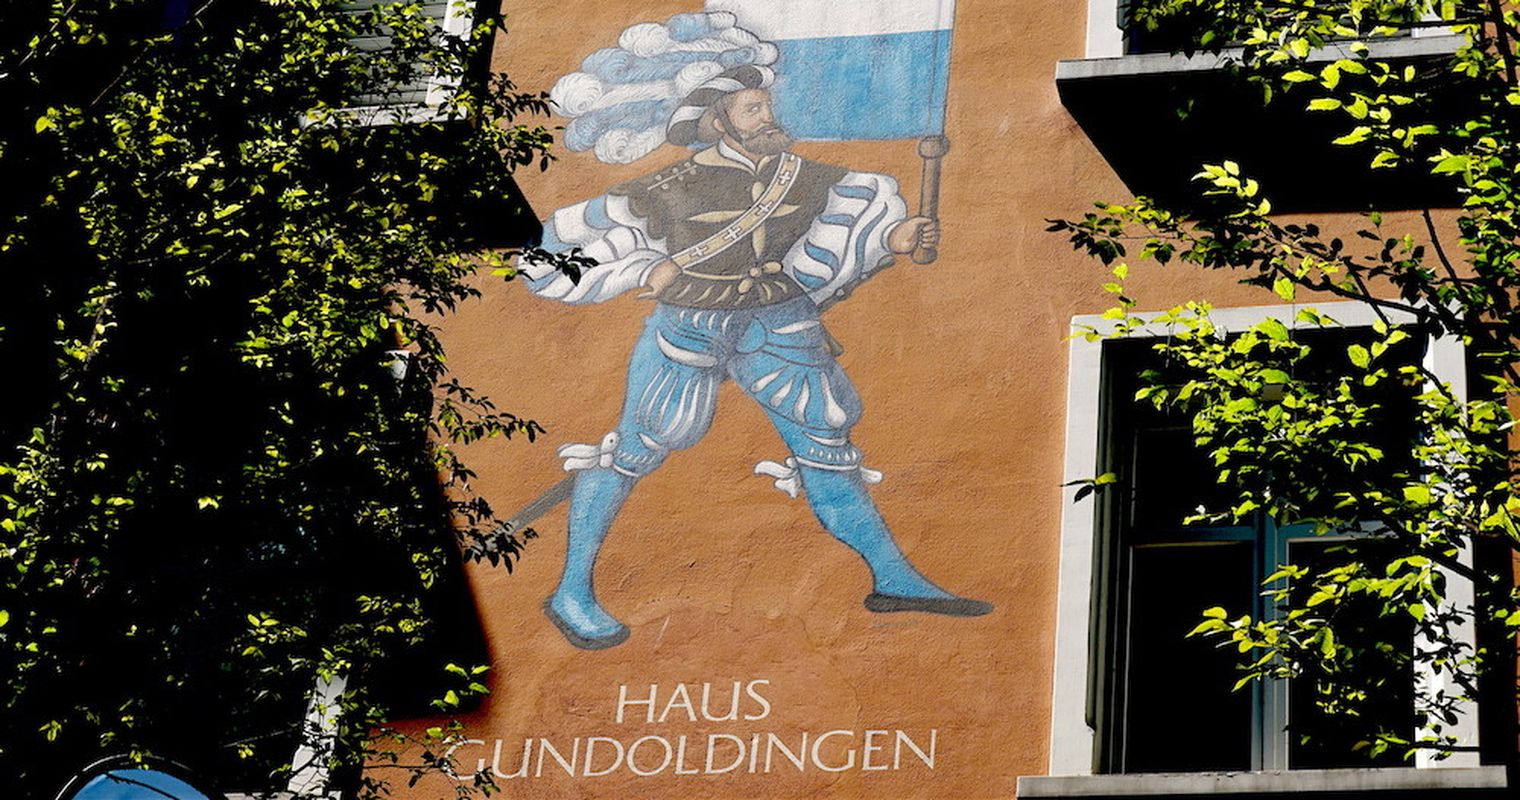 «Haus Gundoldingen» für 6,5 Millionen ausgeschrieben